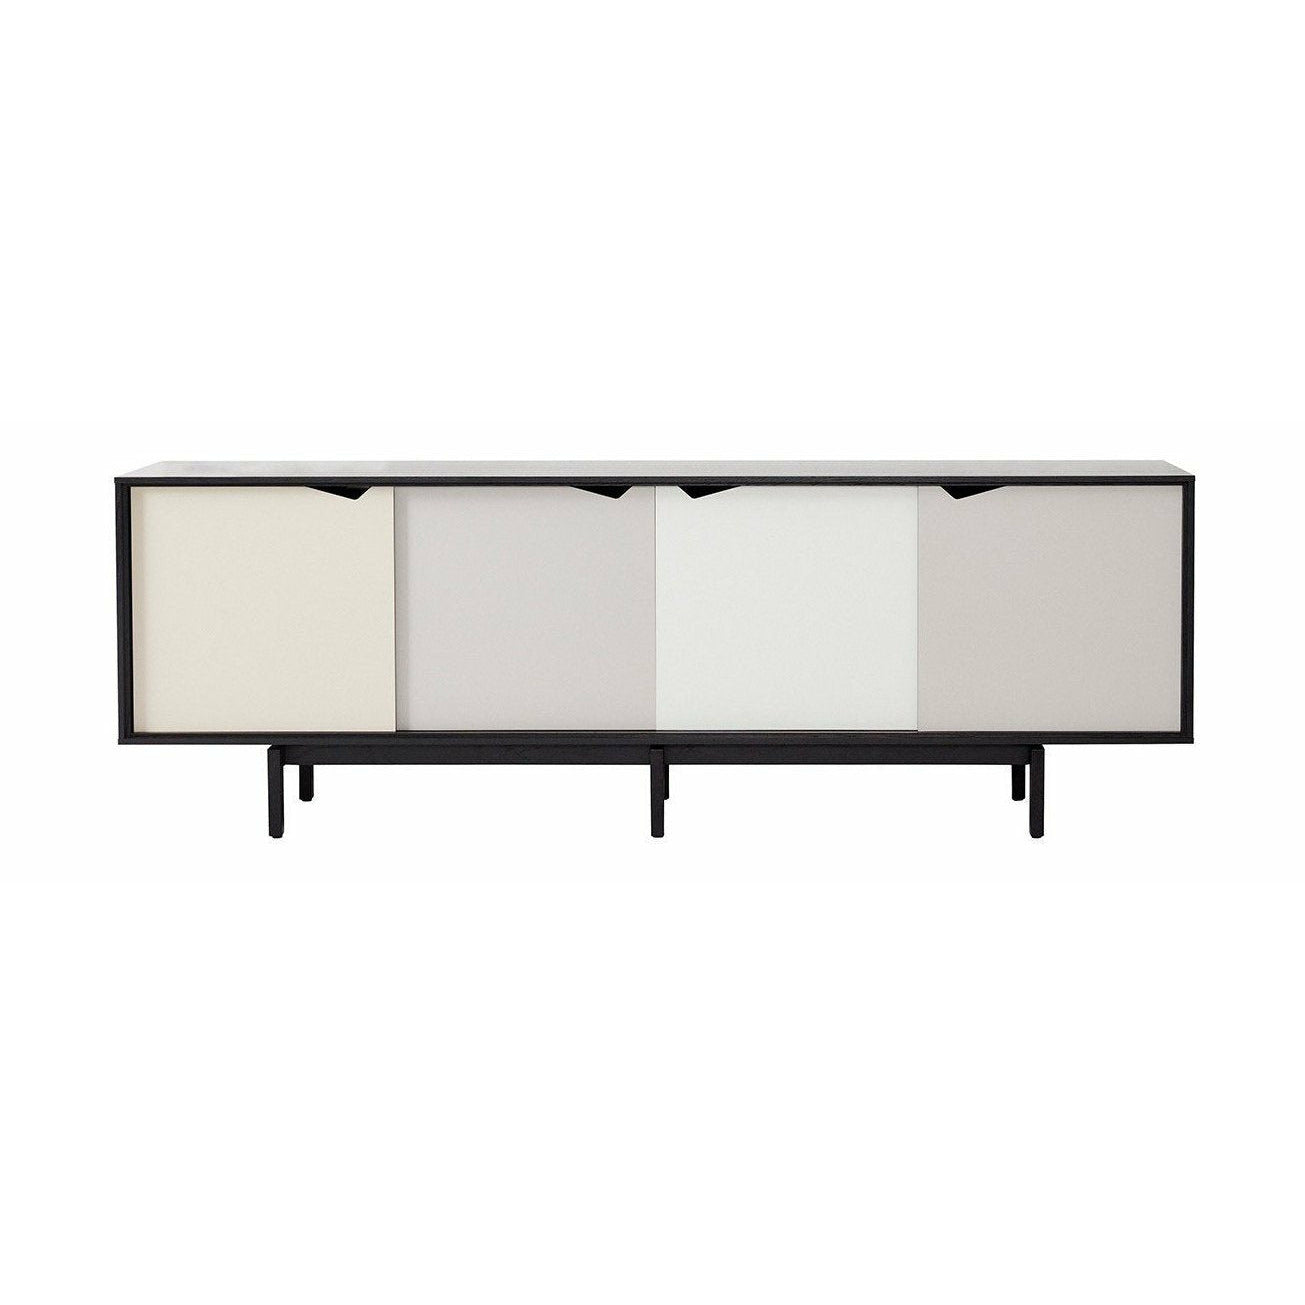 Andersen Furniture S1 på sidobadsvart, mångfärgade dörrar, 200 cm